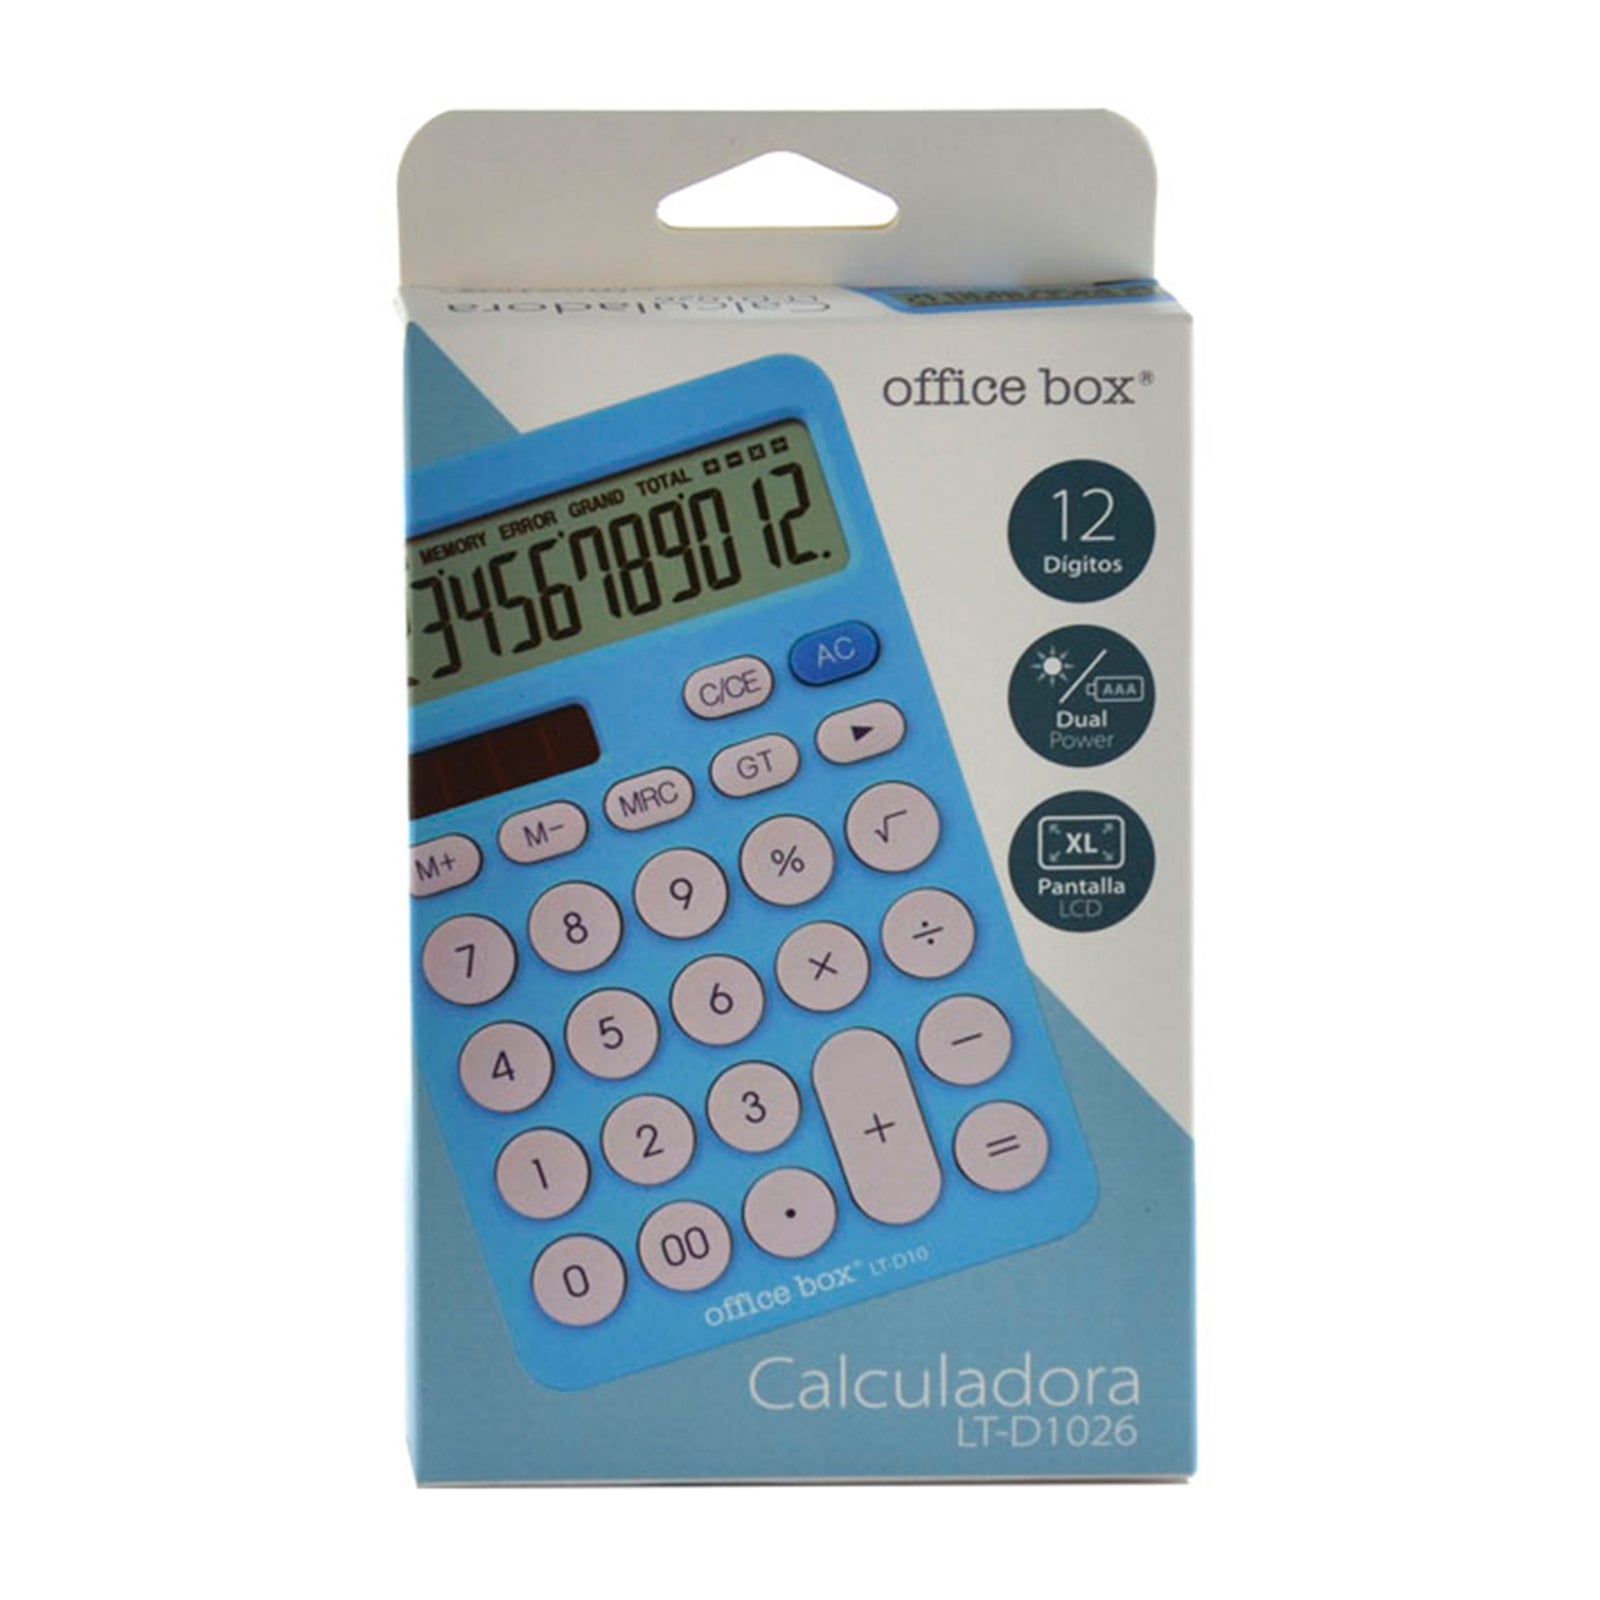 OFFICEBOX - Calculadora de Sobremesa de 12 Dígitos con Pantalla XL. Azul